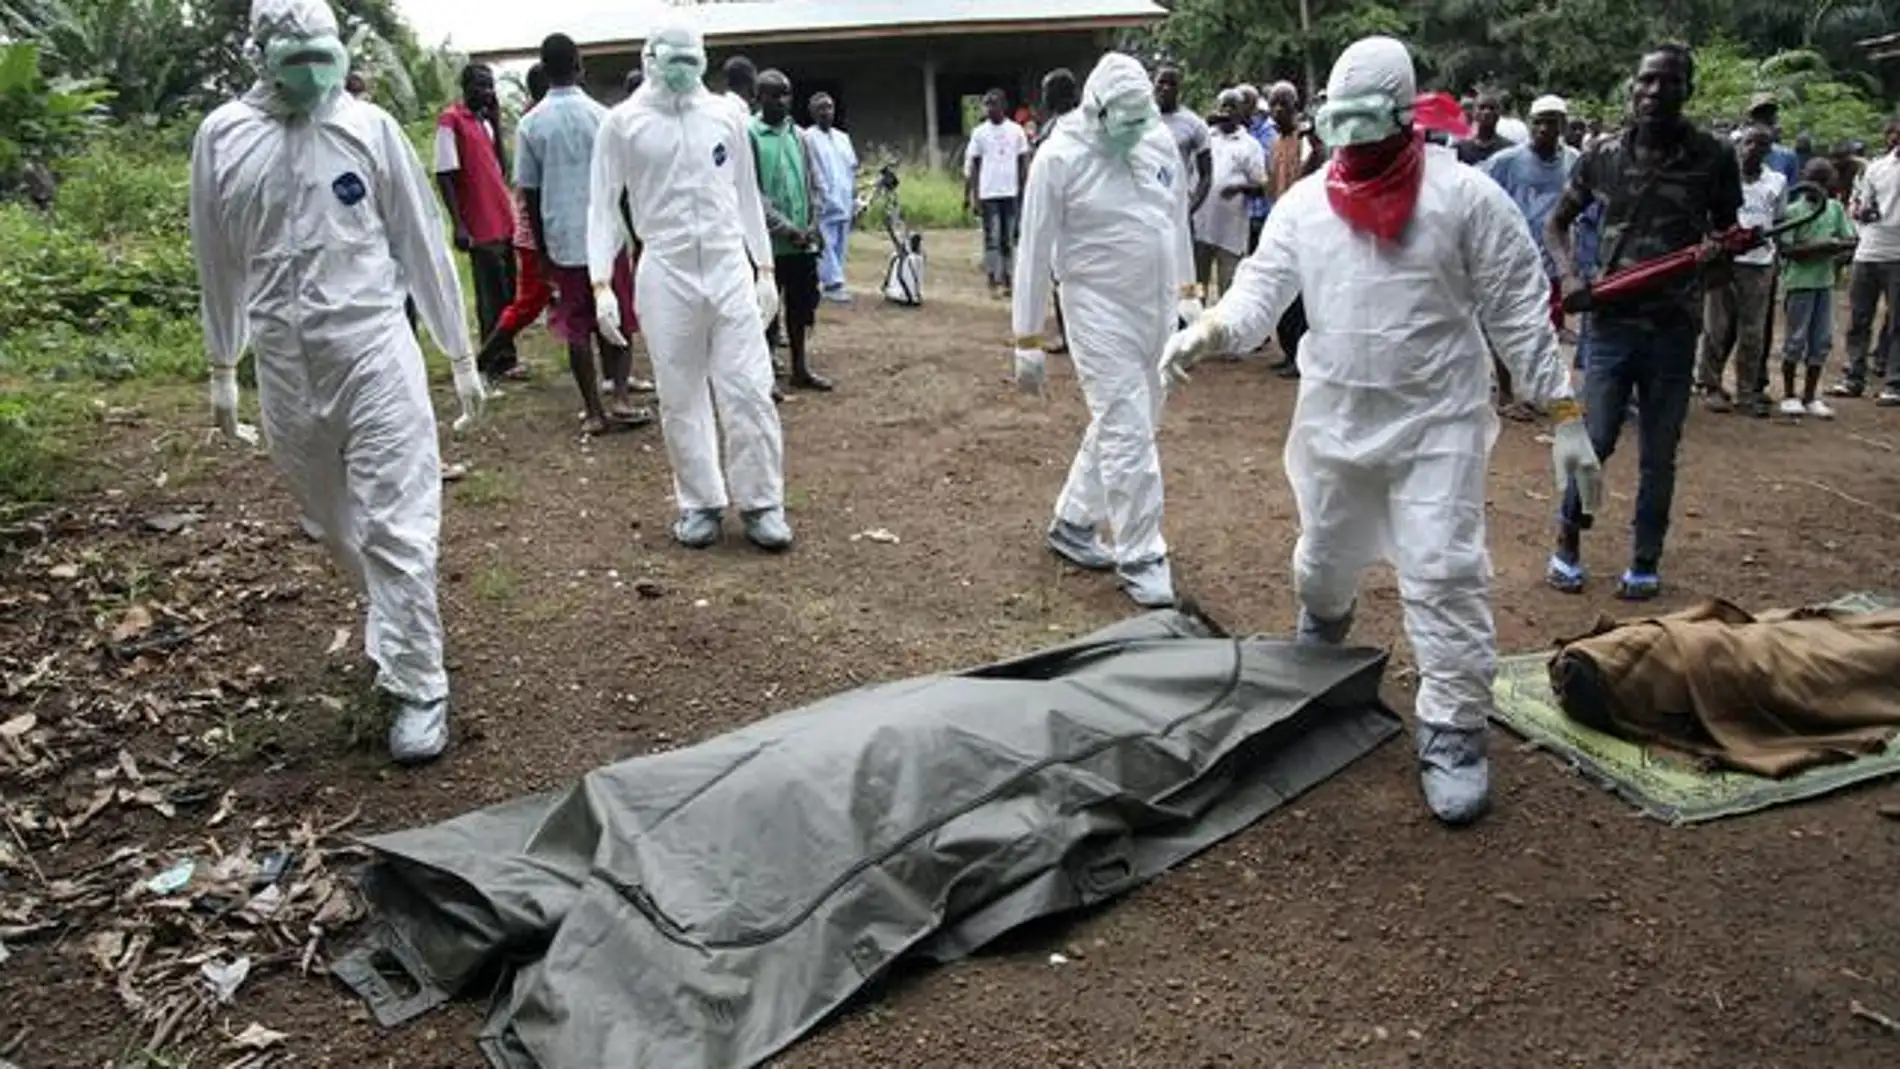 La OMS preocupada por un caso de ebola confirmado en el area urbana del Congo